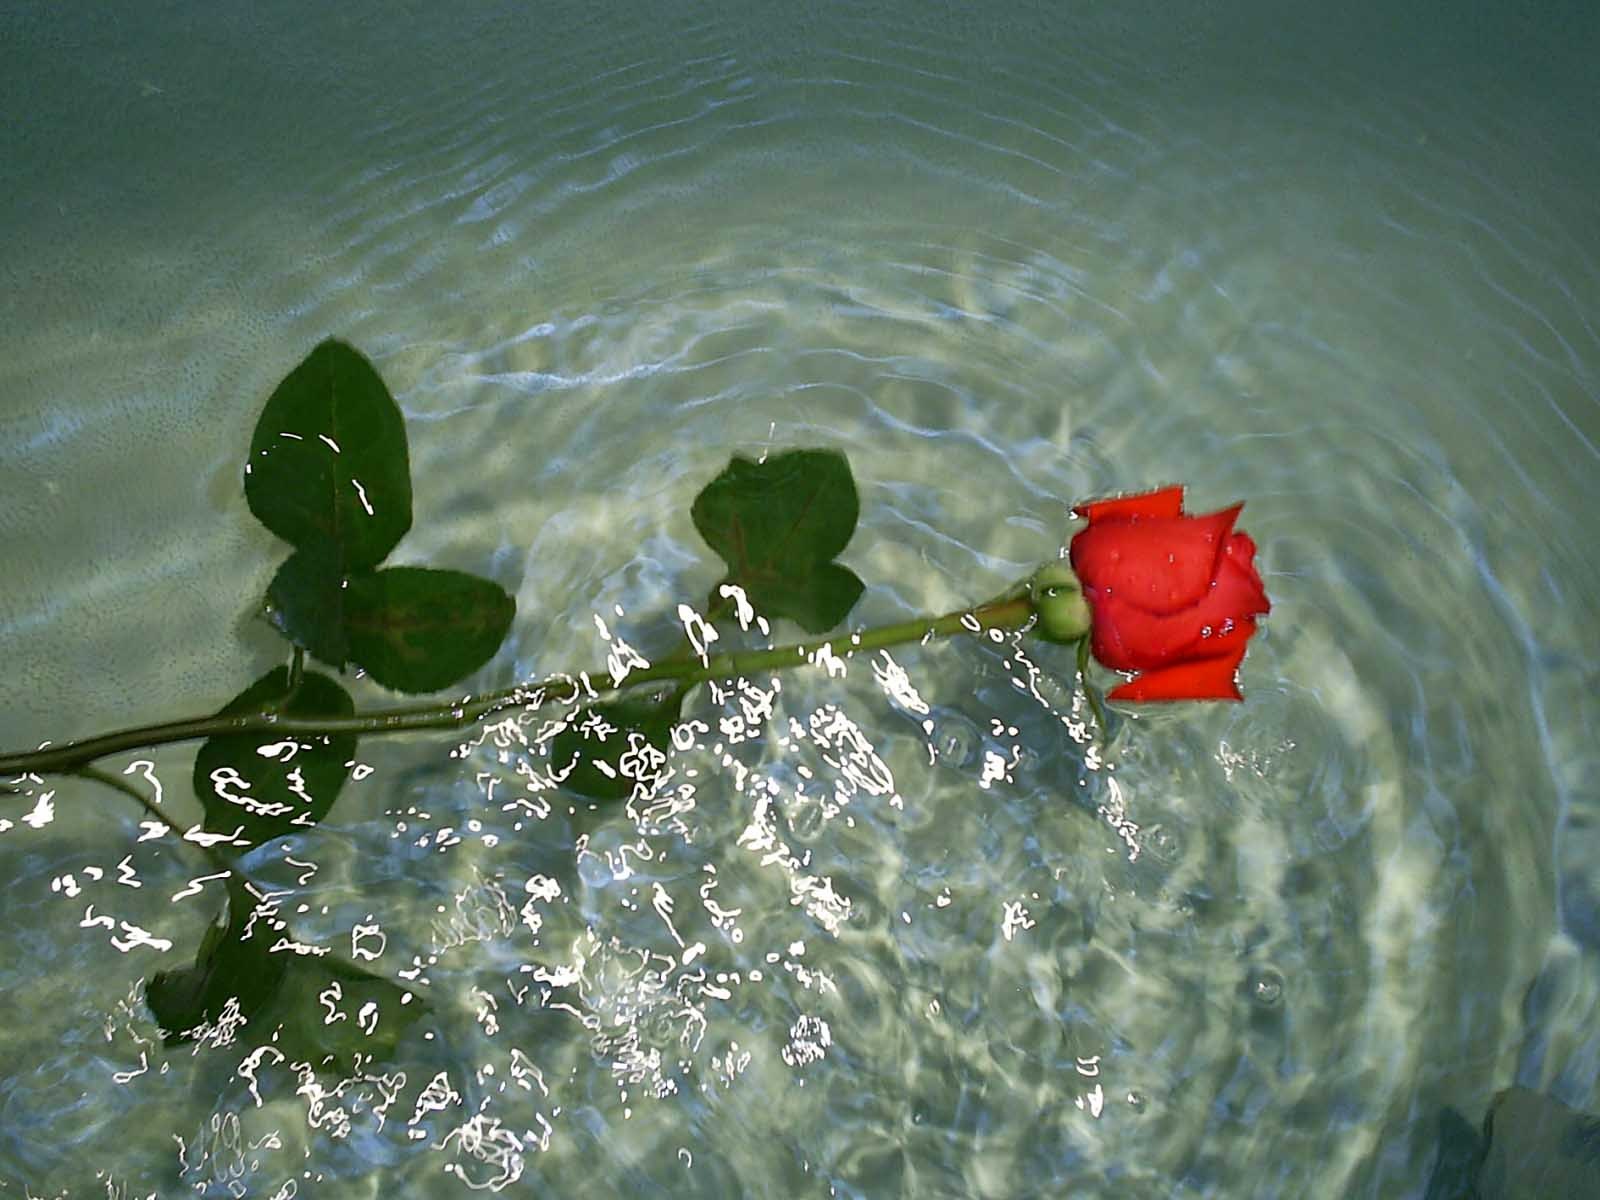 Как ухаживать за розой в воде. Цветы на воде. Цветы розы в воде. Отражение розы в воде. Цветы плавают в воде.